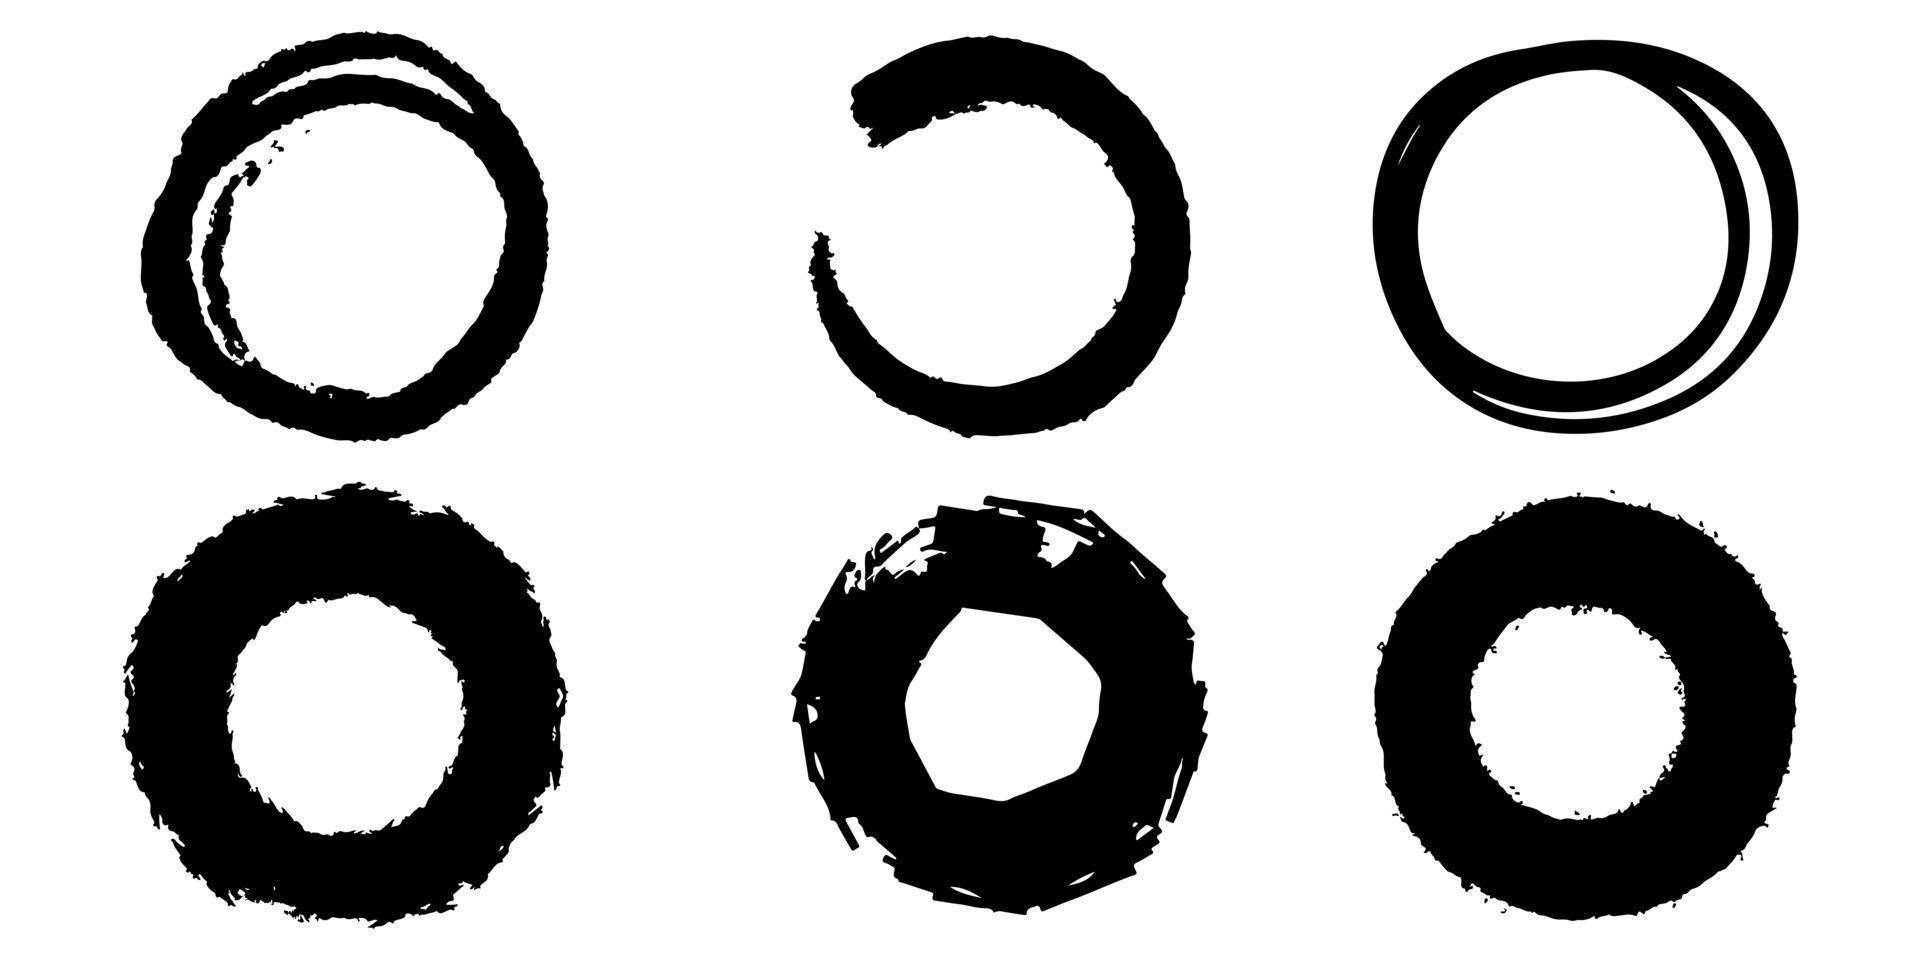 Satz von handgezeichneten Vektor-Doodle-Kreislinienskizze isoliert auf weißem Hintergrund. vektor